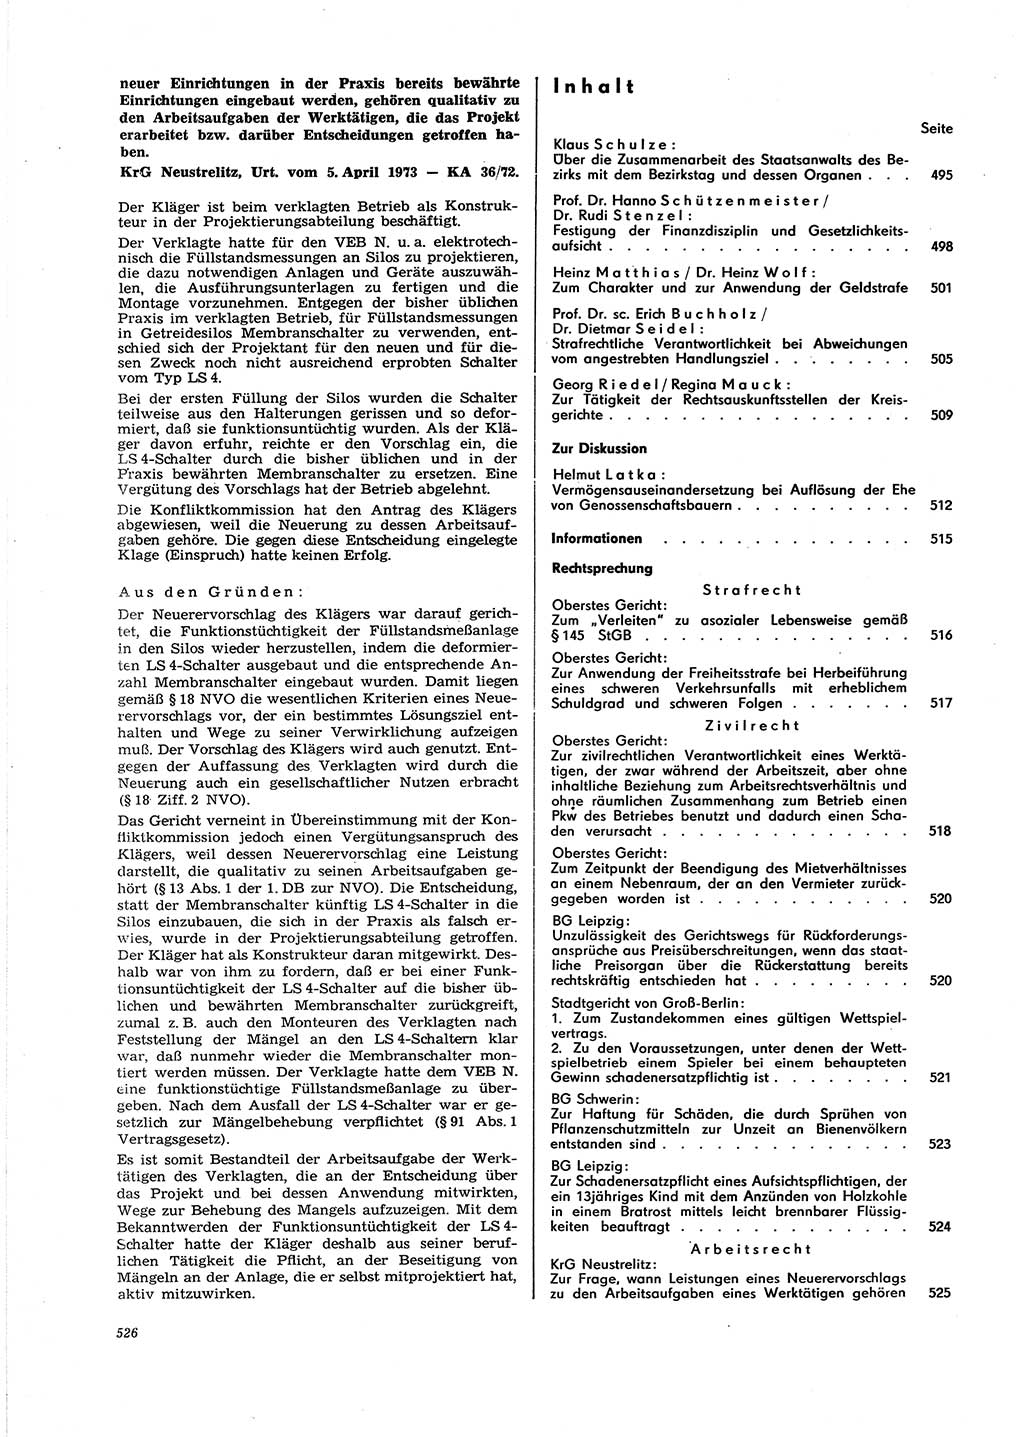 Neue Justiz (NJ), Zeitschrift für Recht und Rechtswissenschaft [Deutsche Demokratische Republik (DDR)], 27. Jahrgang 1973, Seite 526 (NJ DDR 1973, S. 526)